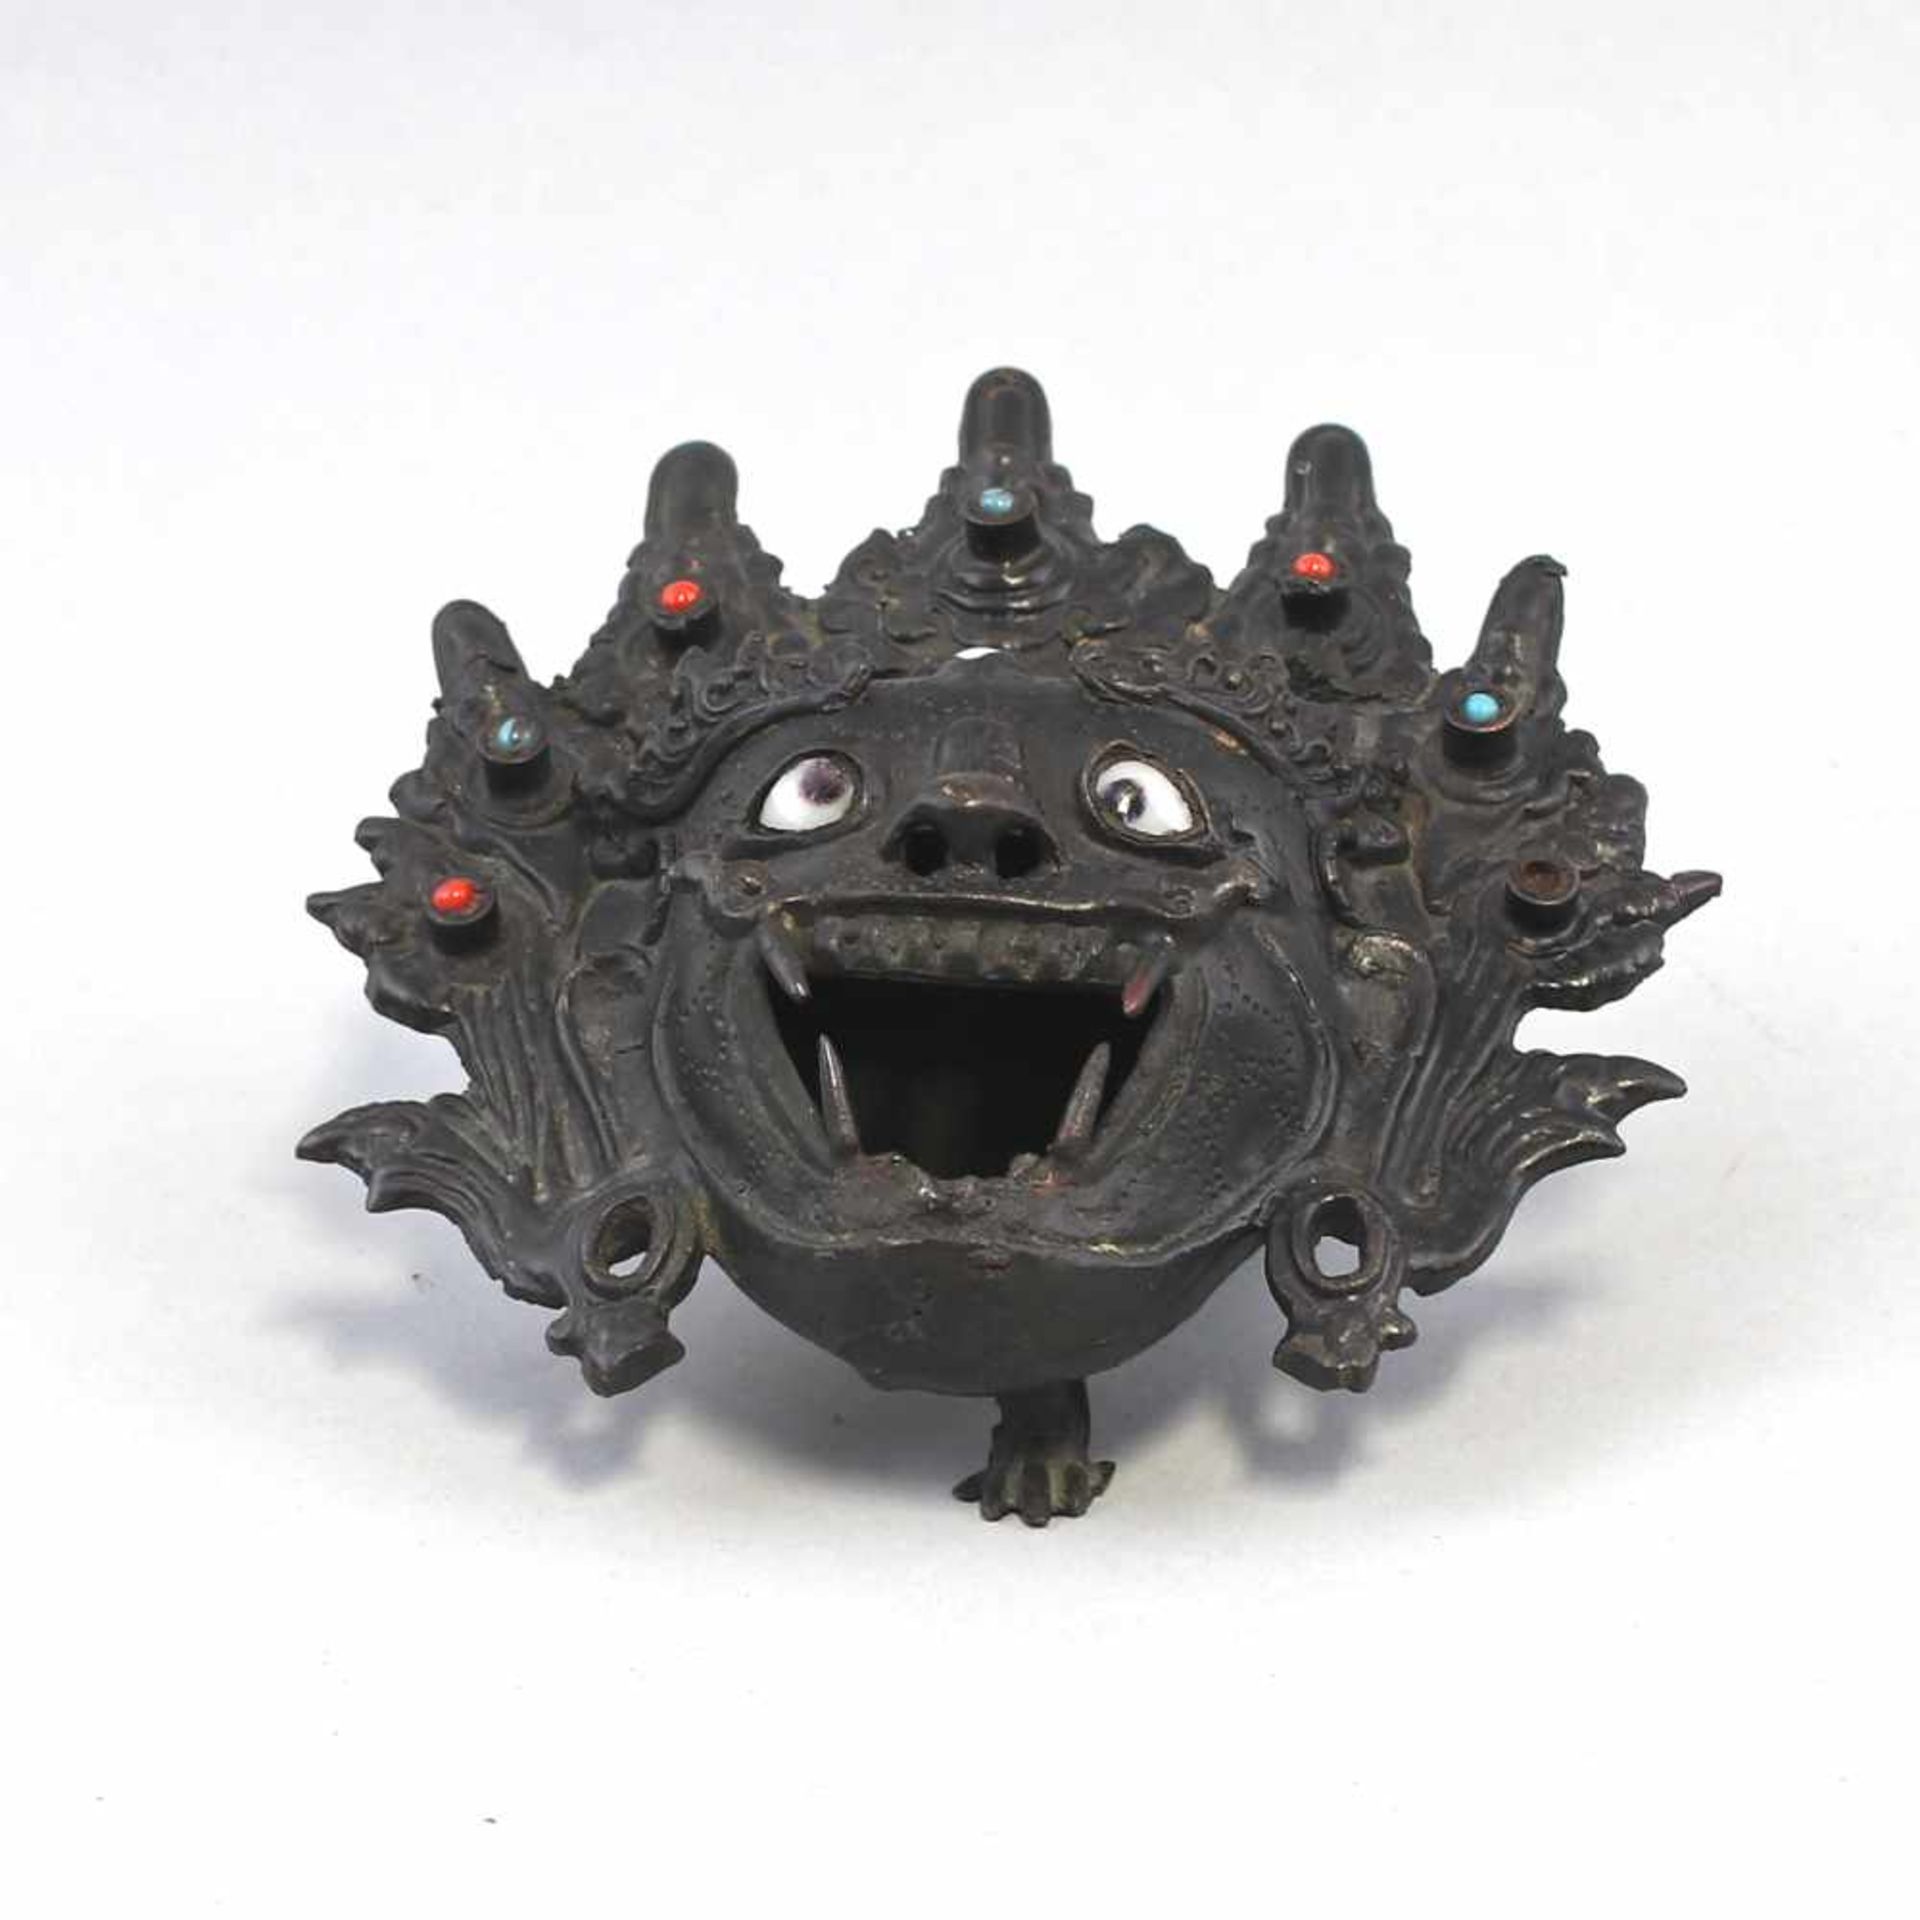 Räuchergefäß Dämonenkopfwohl Tibet/China, alt, Bronze mit dunkler Patina, auf 3 Beinen, Gefäß in - Bild 4 aus 5